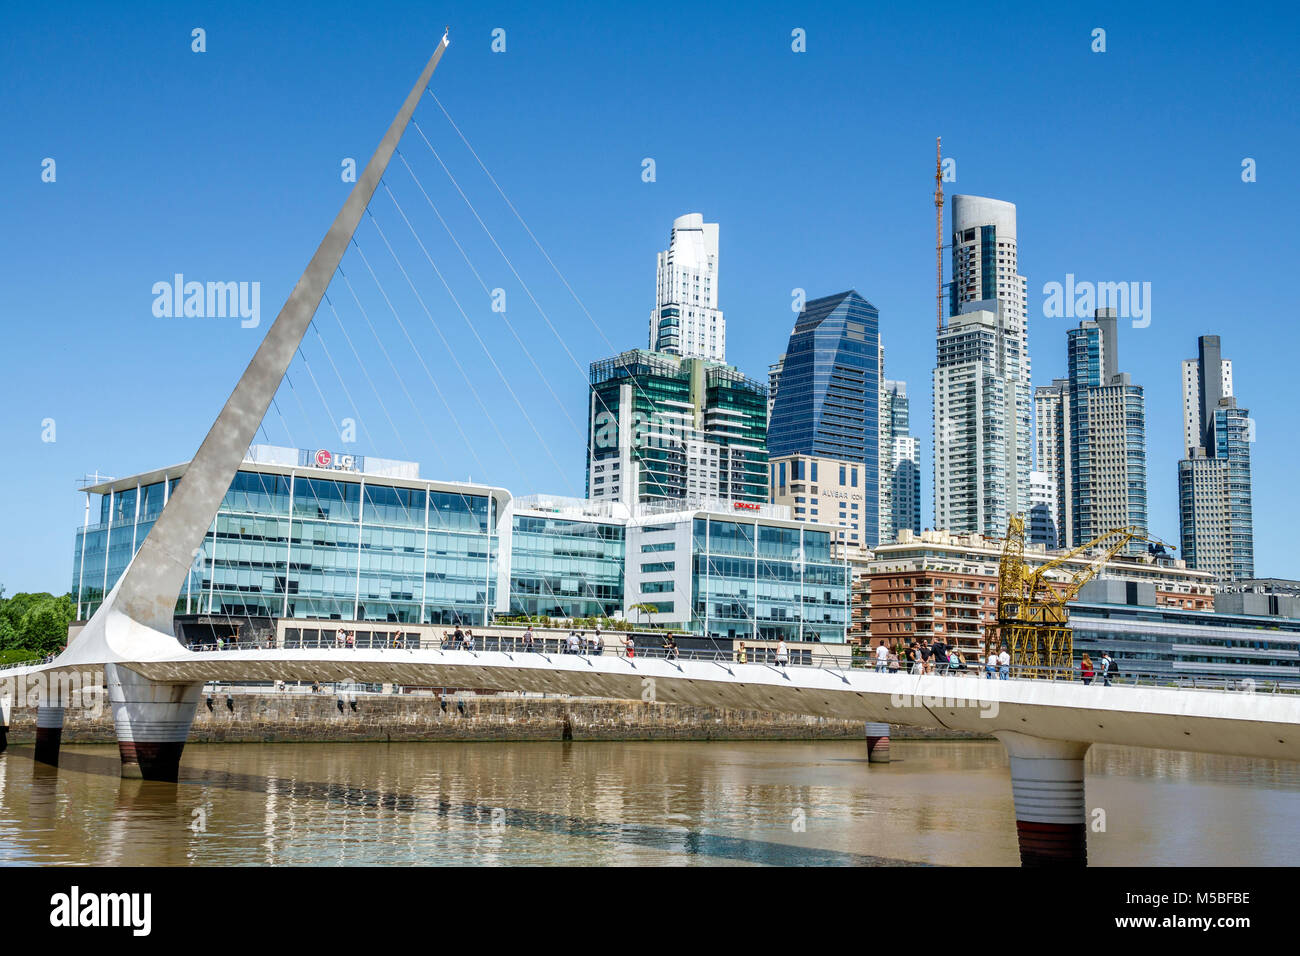 Buenos Aires Argentinien, Puerto Madero, Rio Dique, Wasser, Flussufer, Skyline der Stadt, Puente De La Mujer, Fußgängerhängebrücke entworfen Architekt Stockfoto